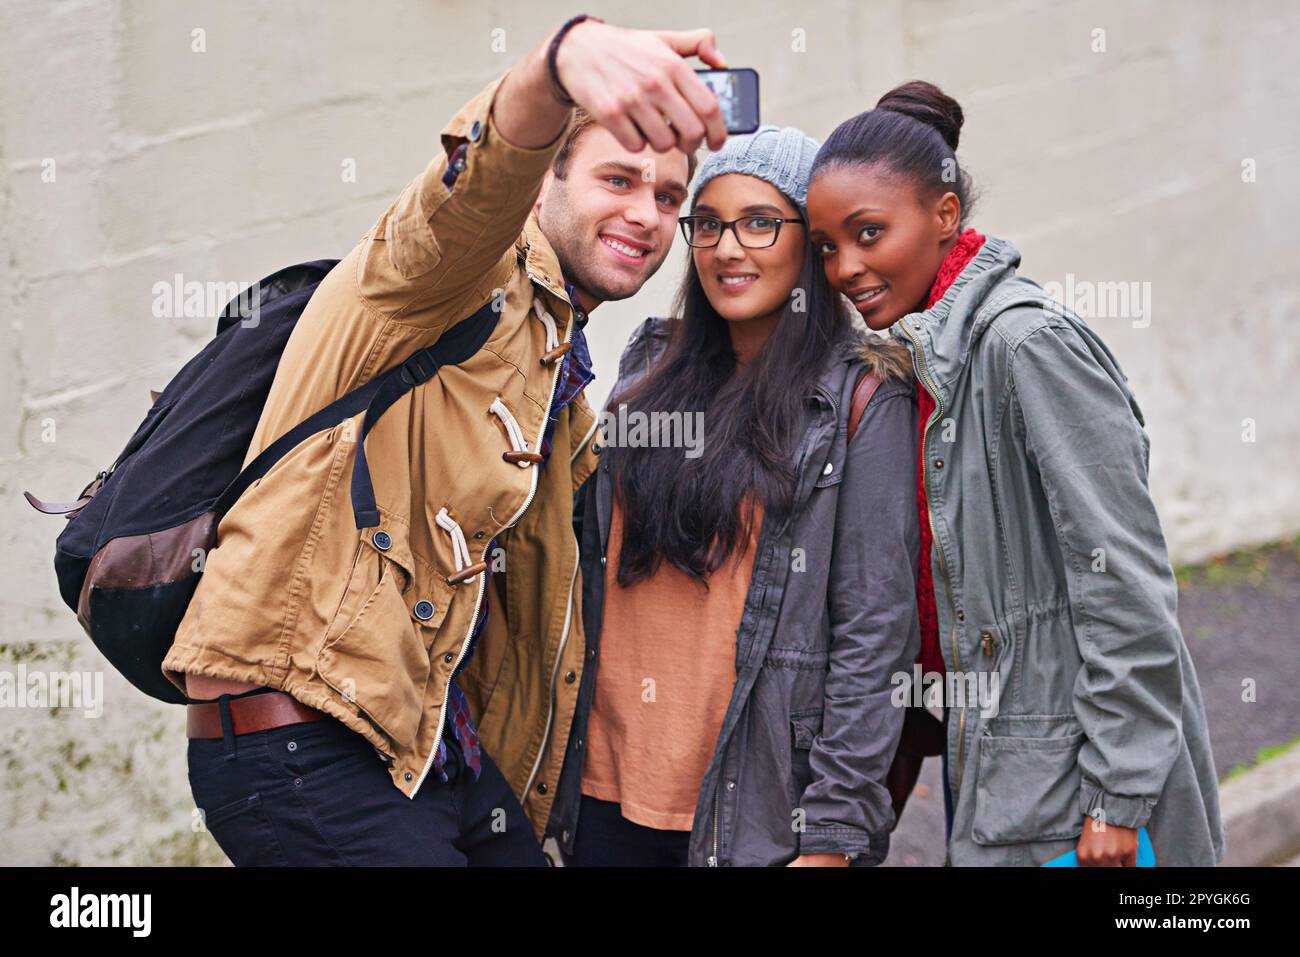 Schnappschüsse aus dem Studentenleben. Eine Gruppe von Studenten macht ein Selfie auf dem Campus. Stockfoto